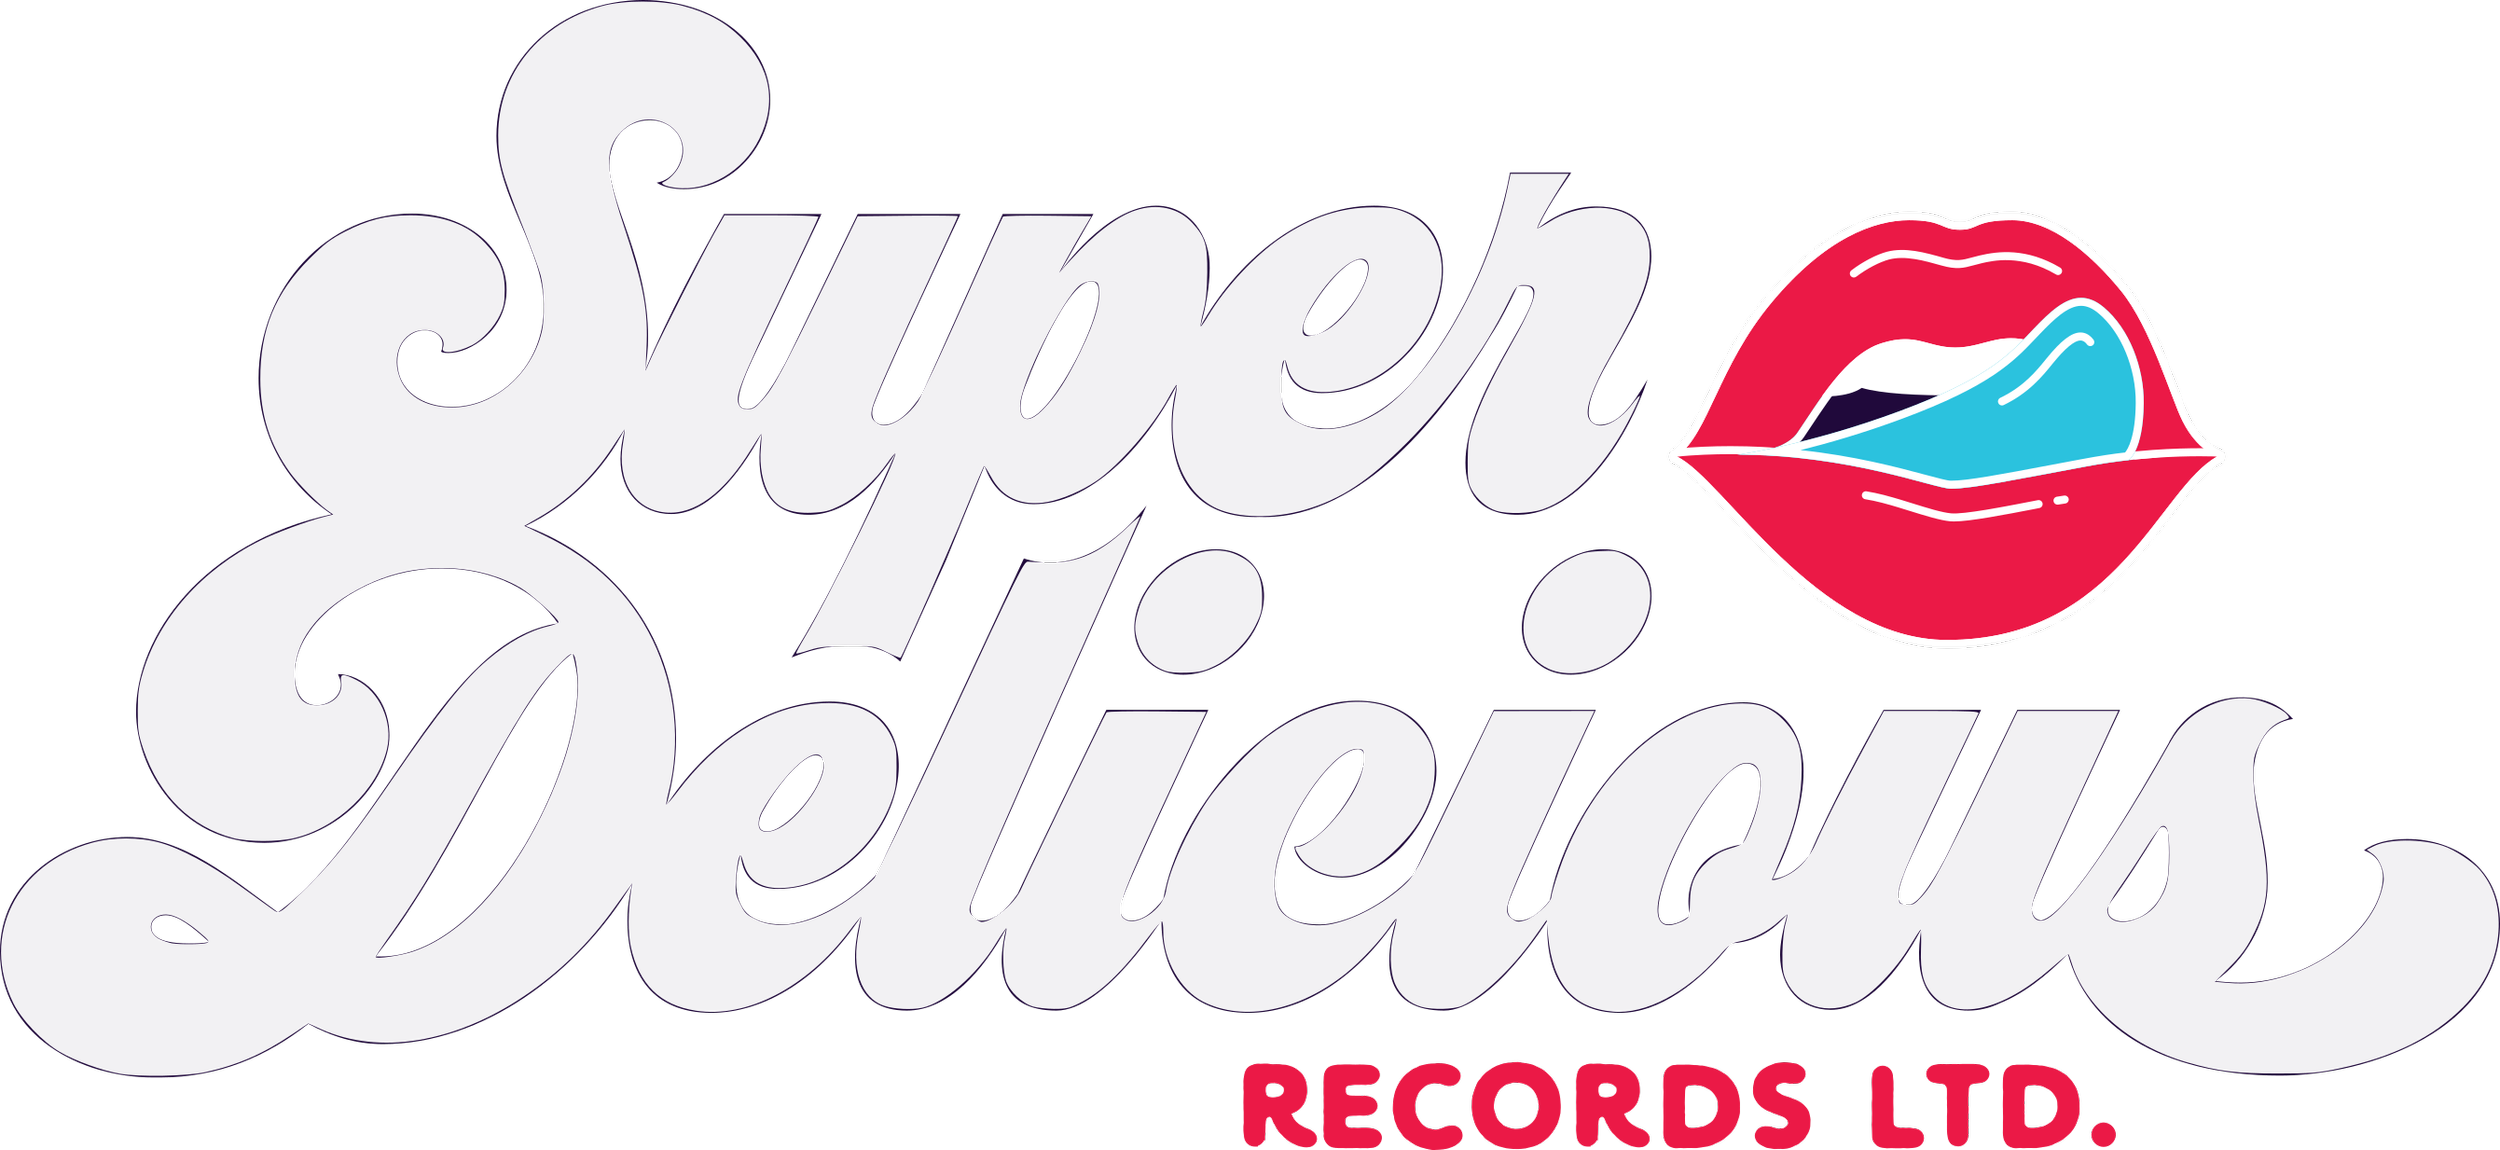 Super Delicious Records Ltd.